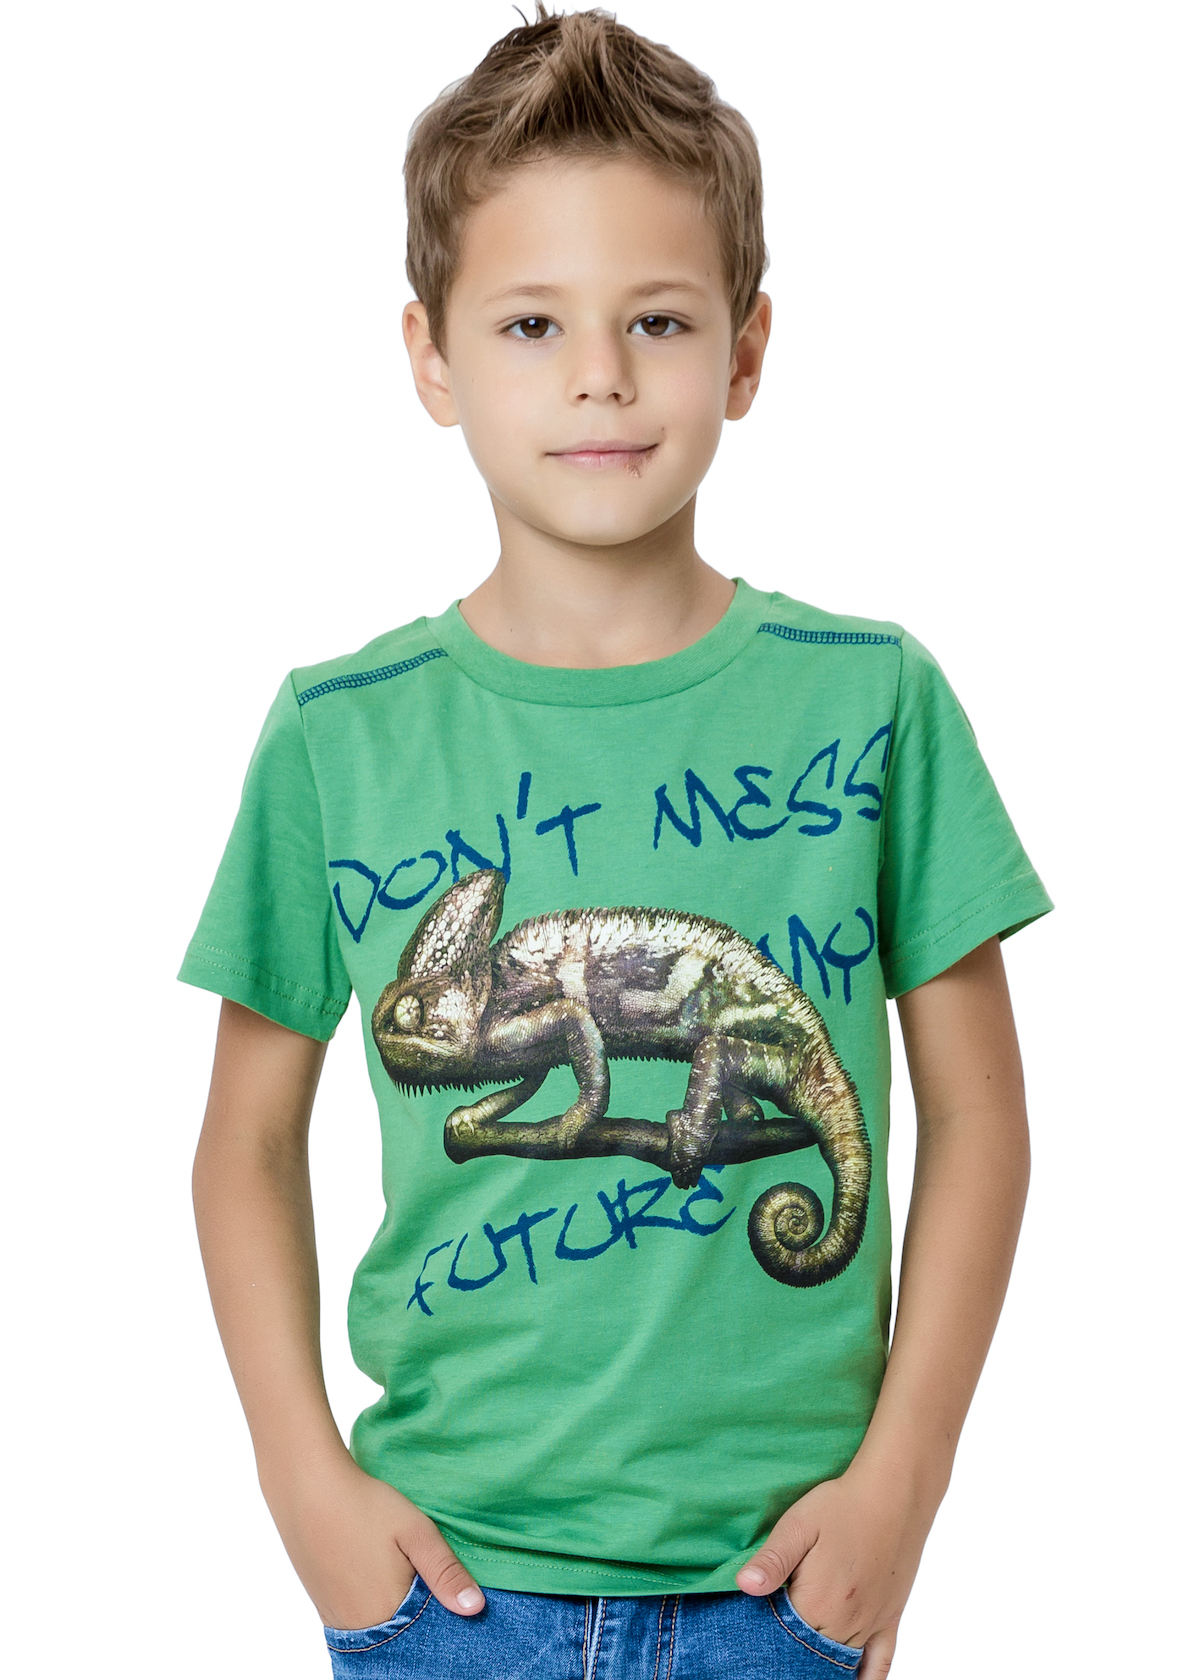 Chlapecké tričko - Winkiki WJB 82272, zelená Barva: Zelená, Velikost: 146